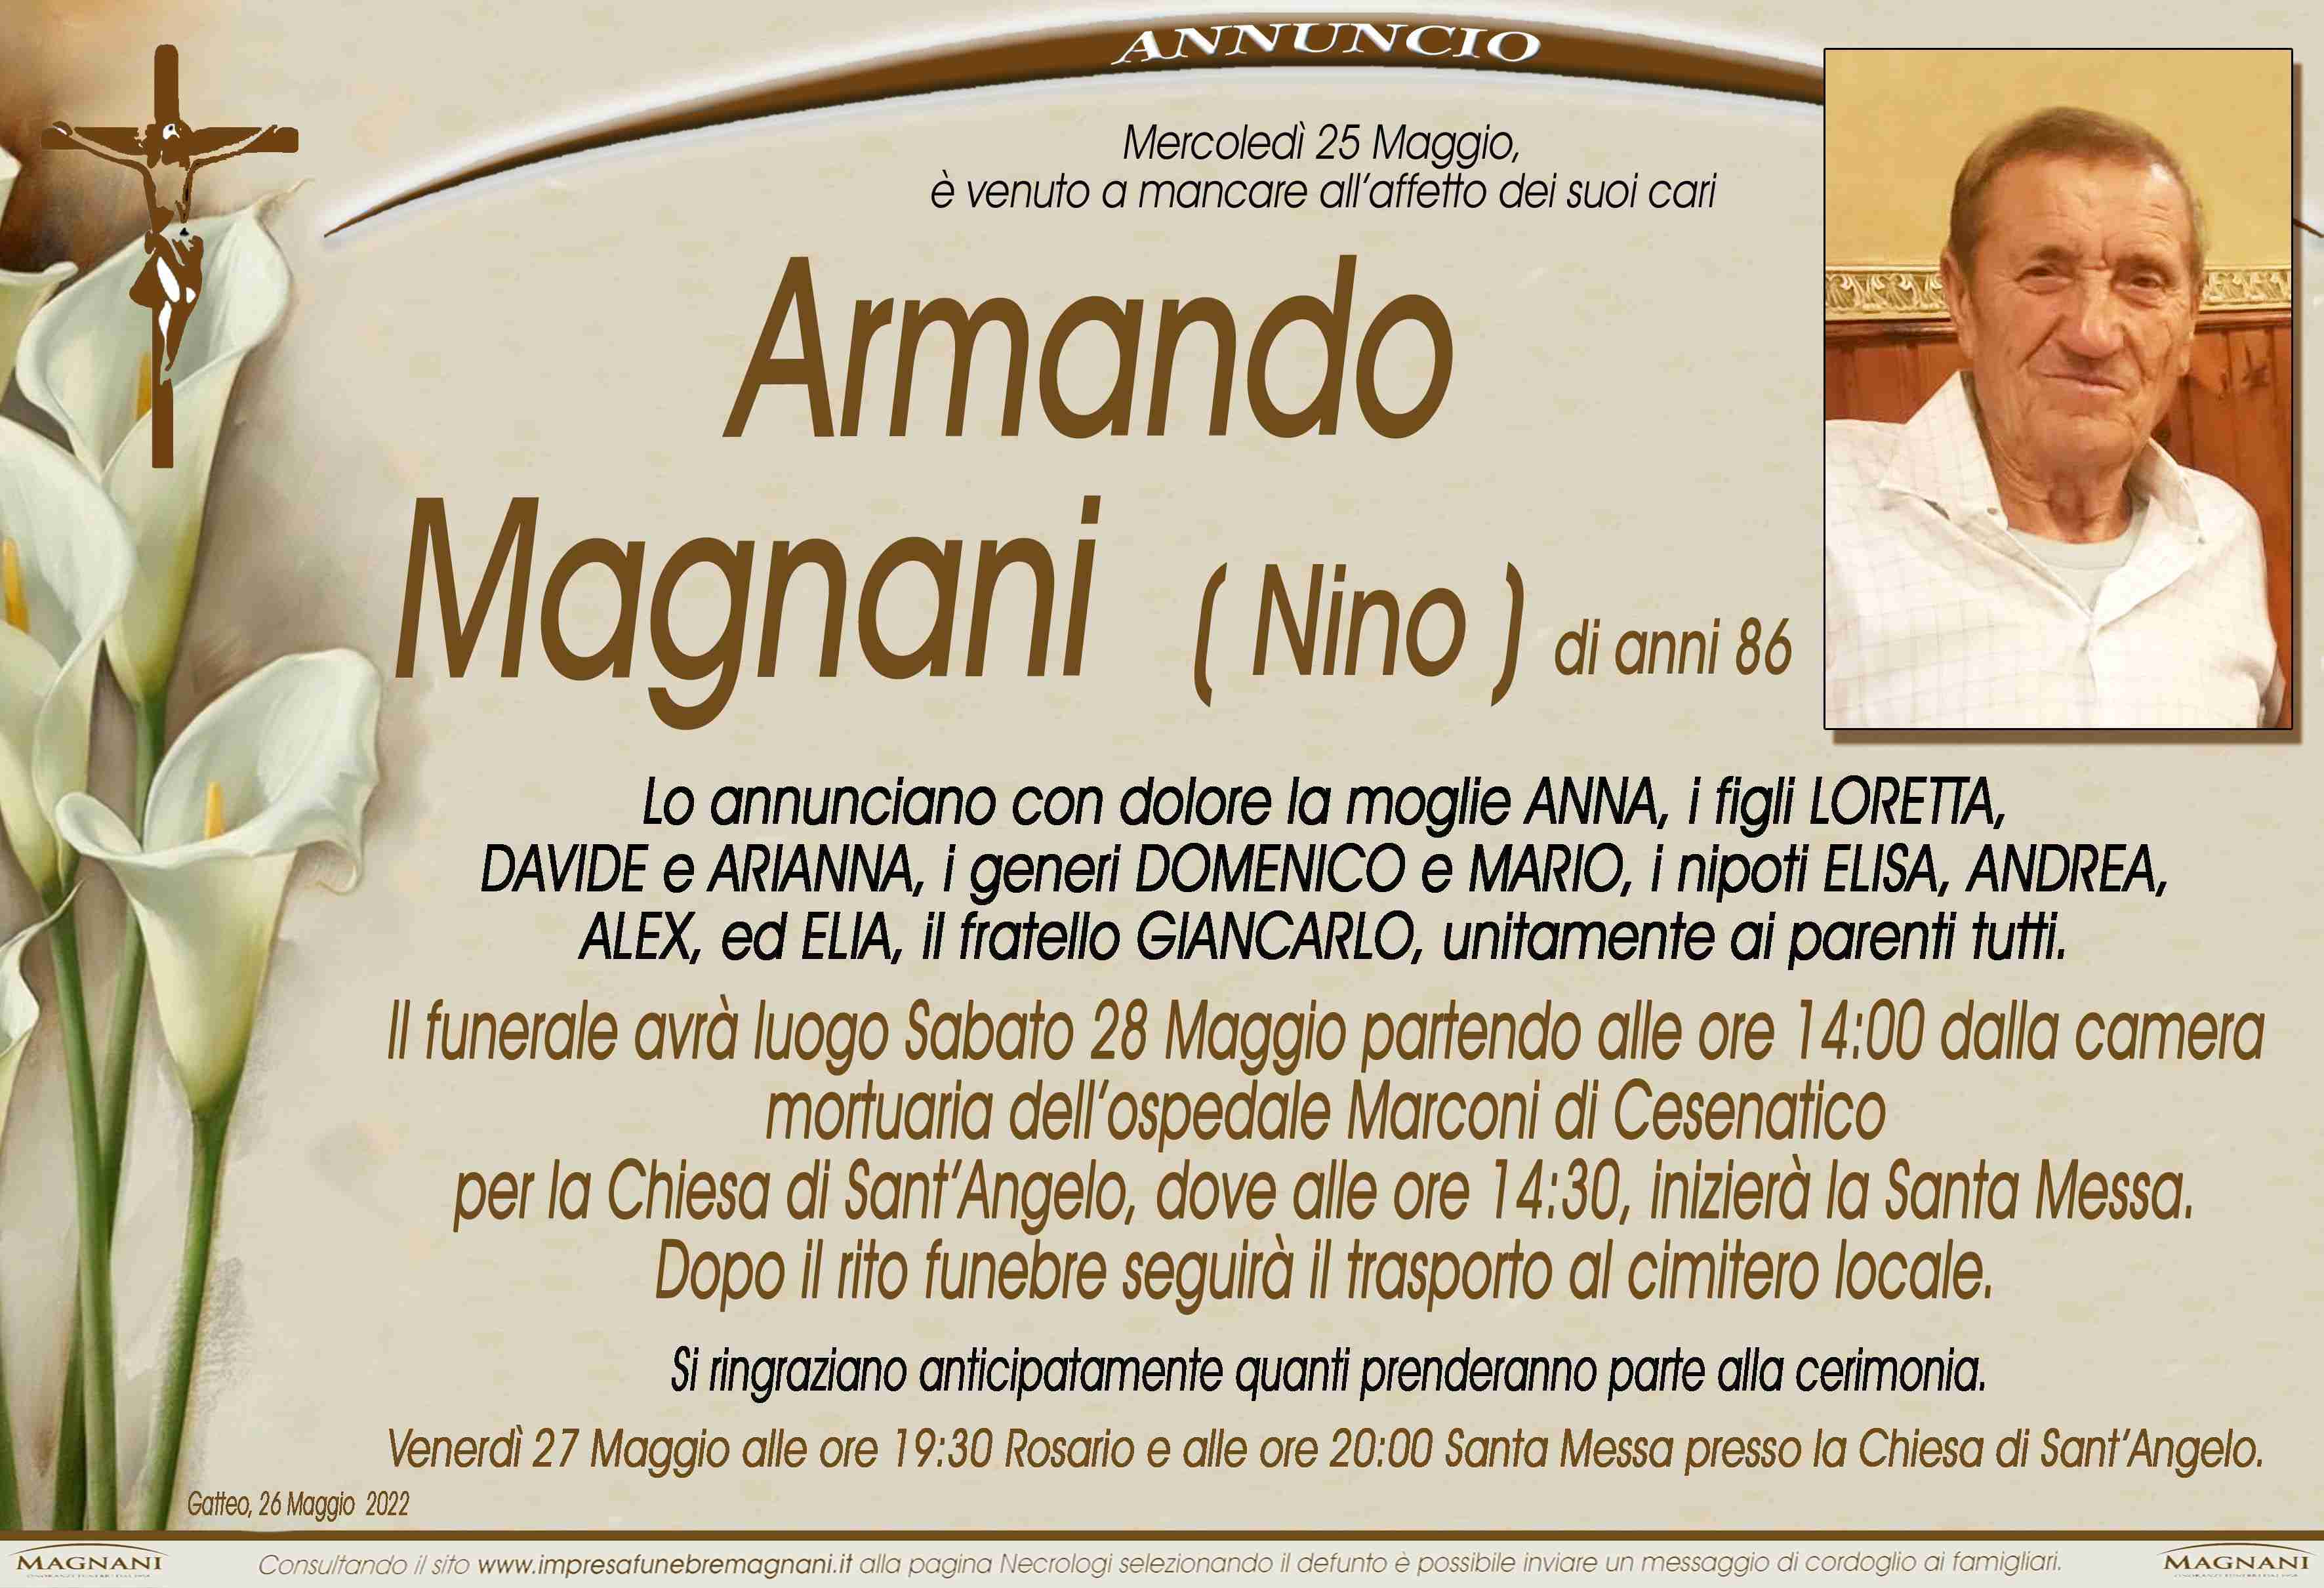 Armando Magnani